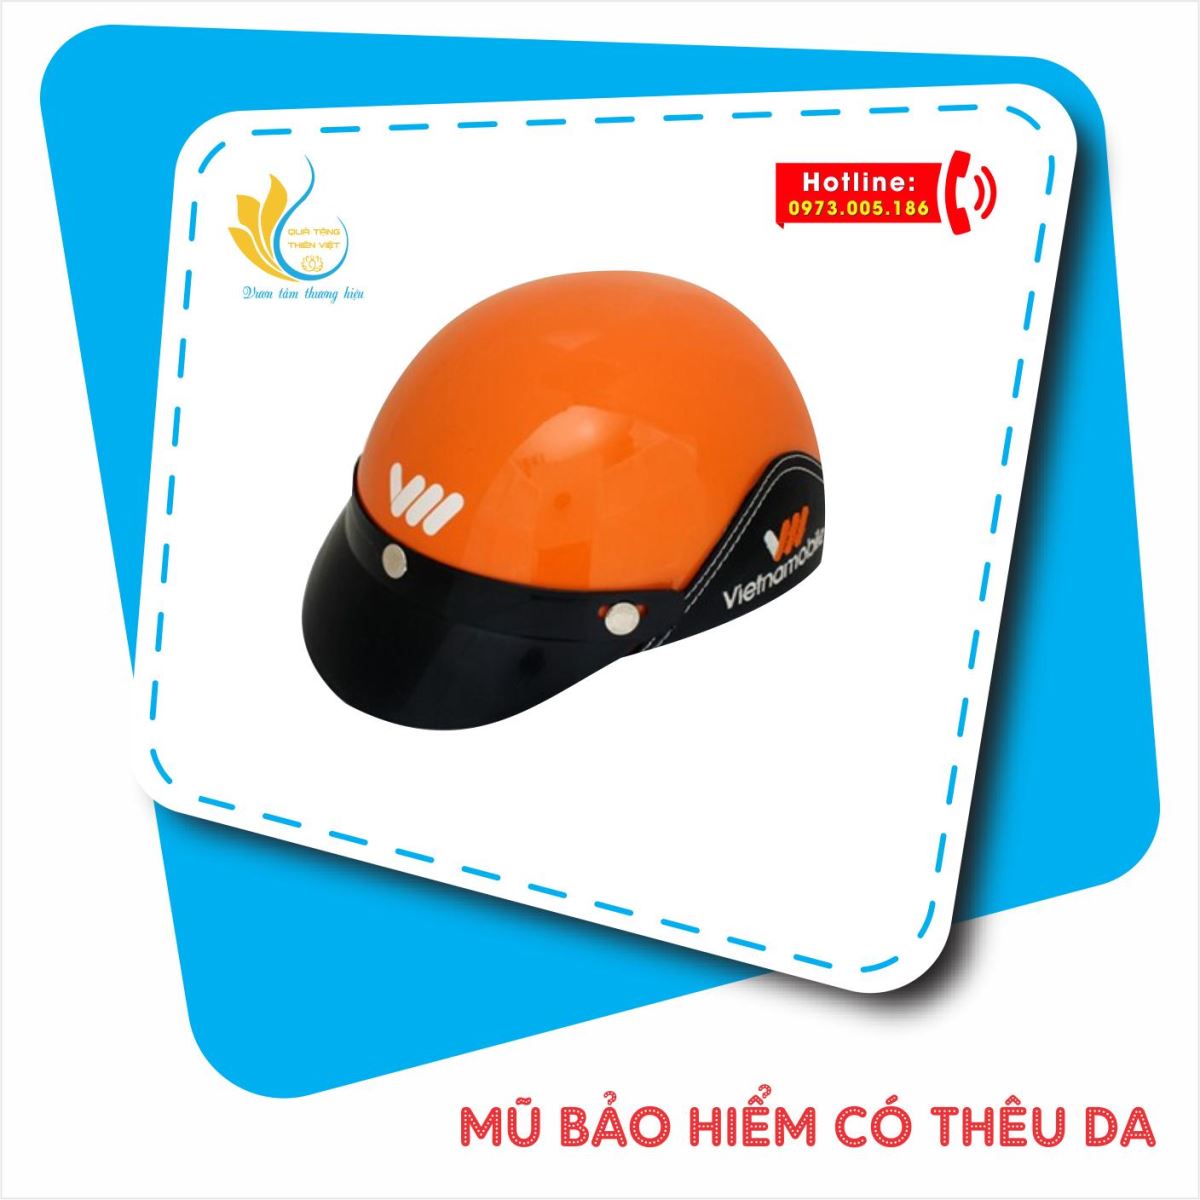 In mũ bảo hiểm logo tại Đà Nẵng giá rẻ 8